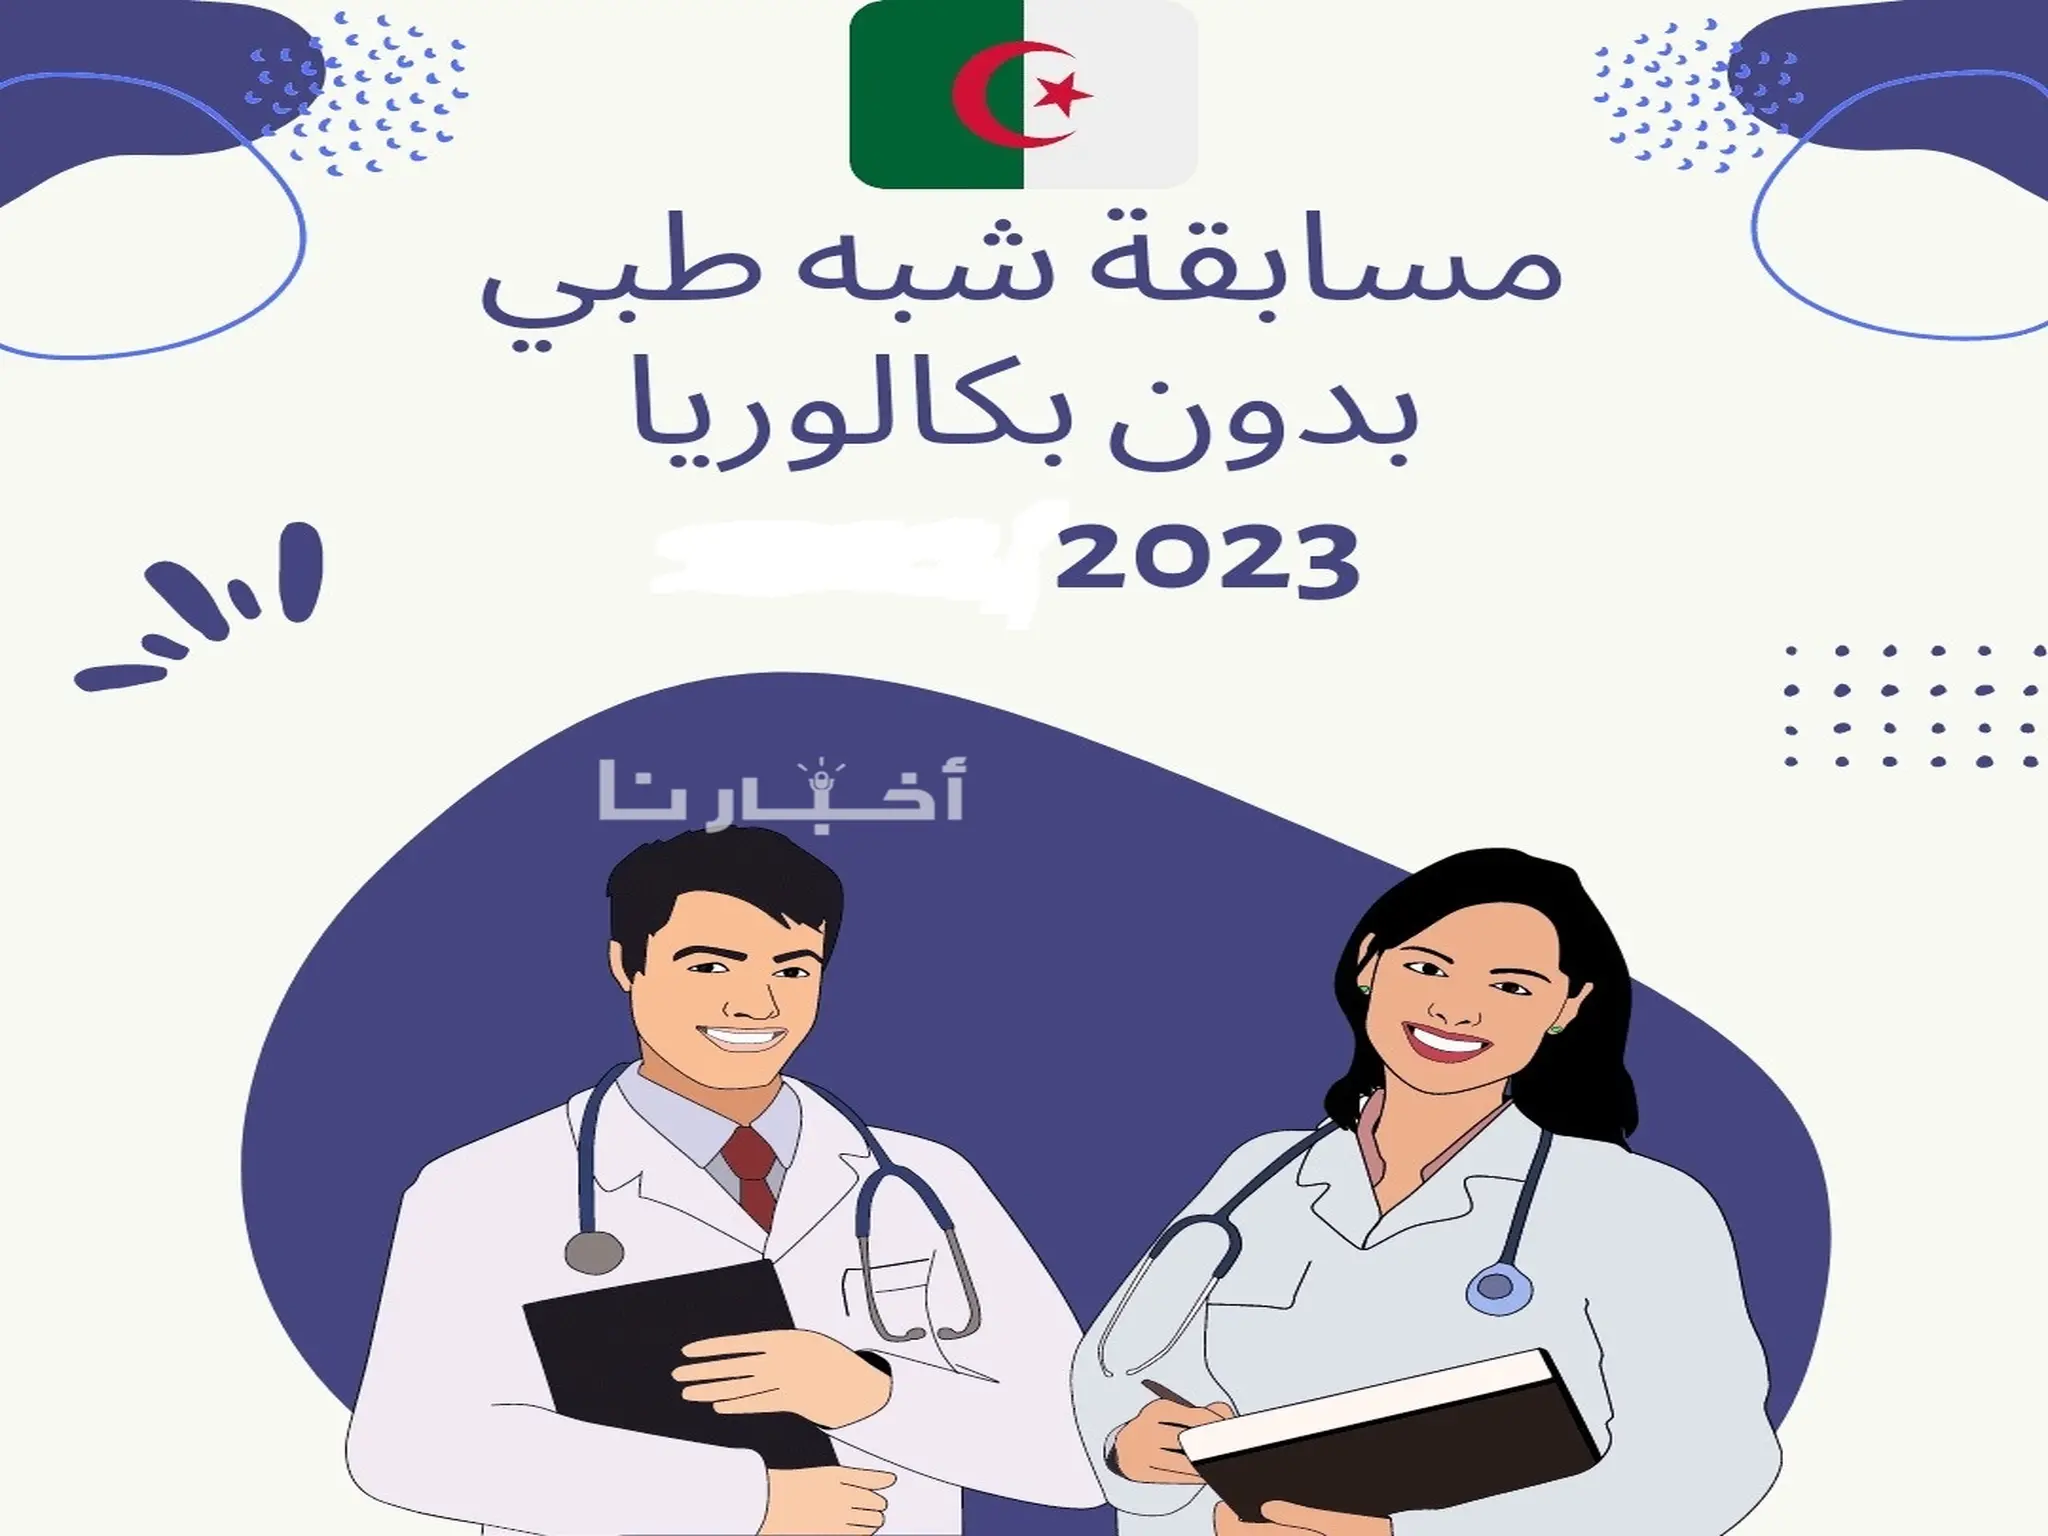 رابط التسجيل فى مسابقة الشبة طبي 2023 بالجزائر